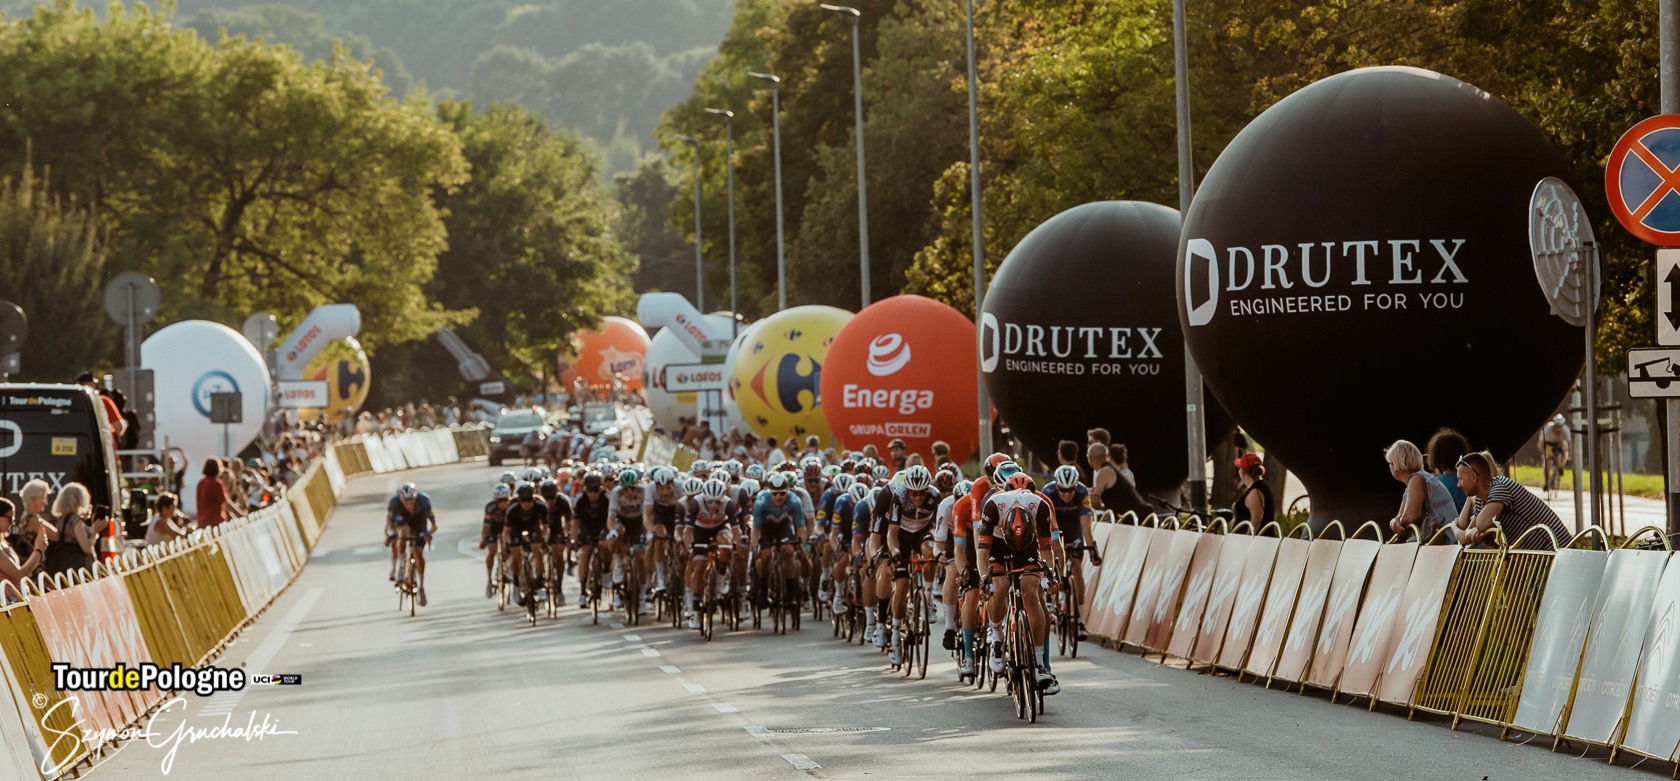 DRUTEX je opět Oficiálním sponzorem Tour de Pologne